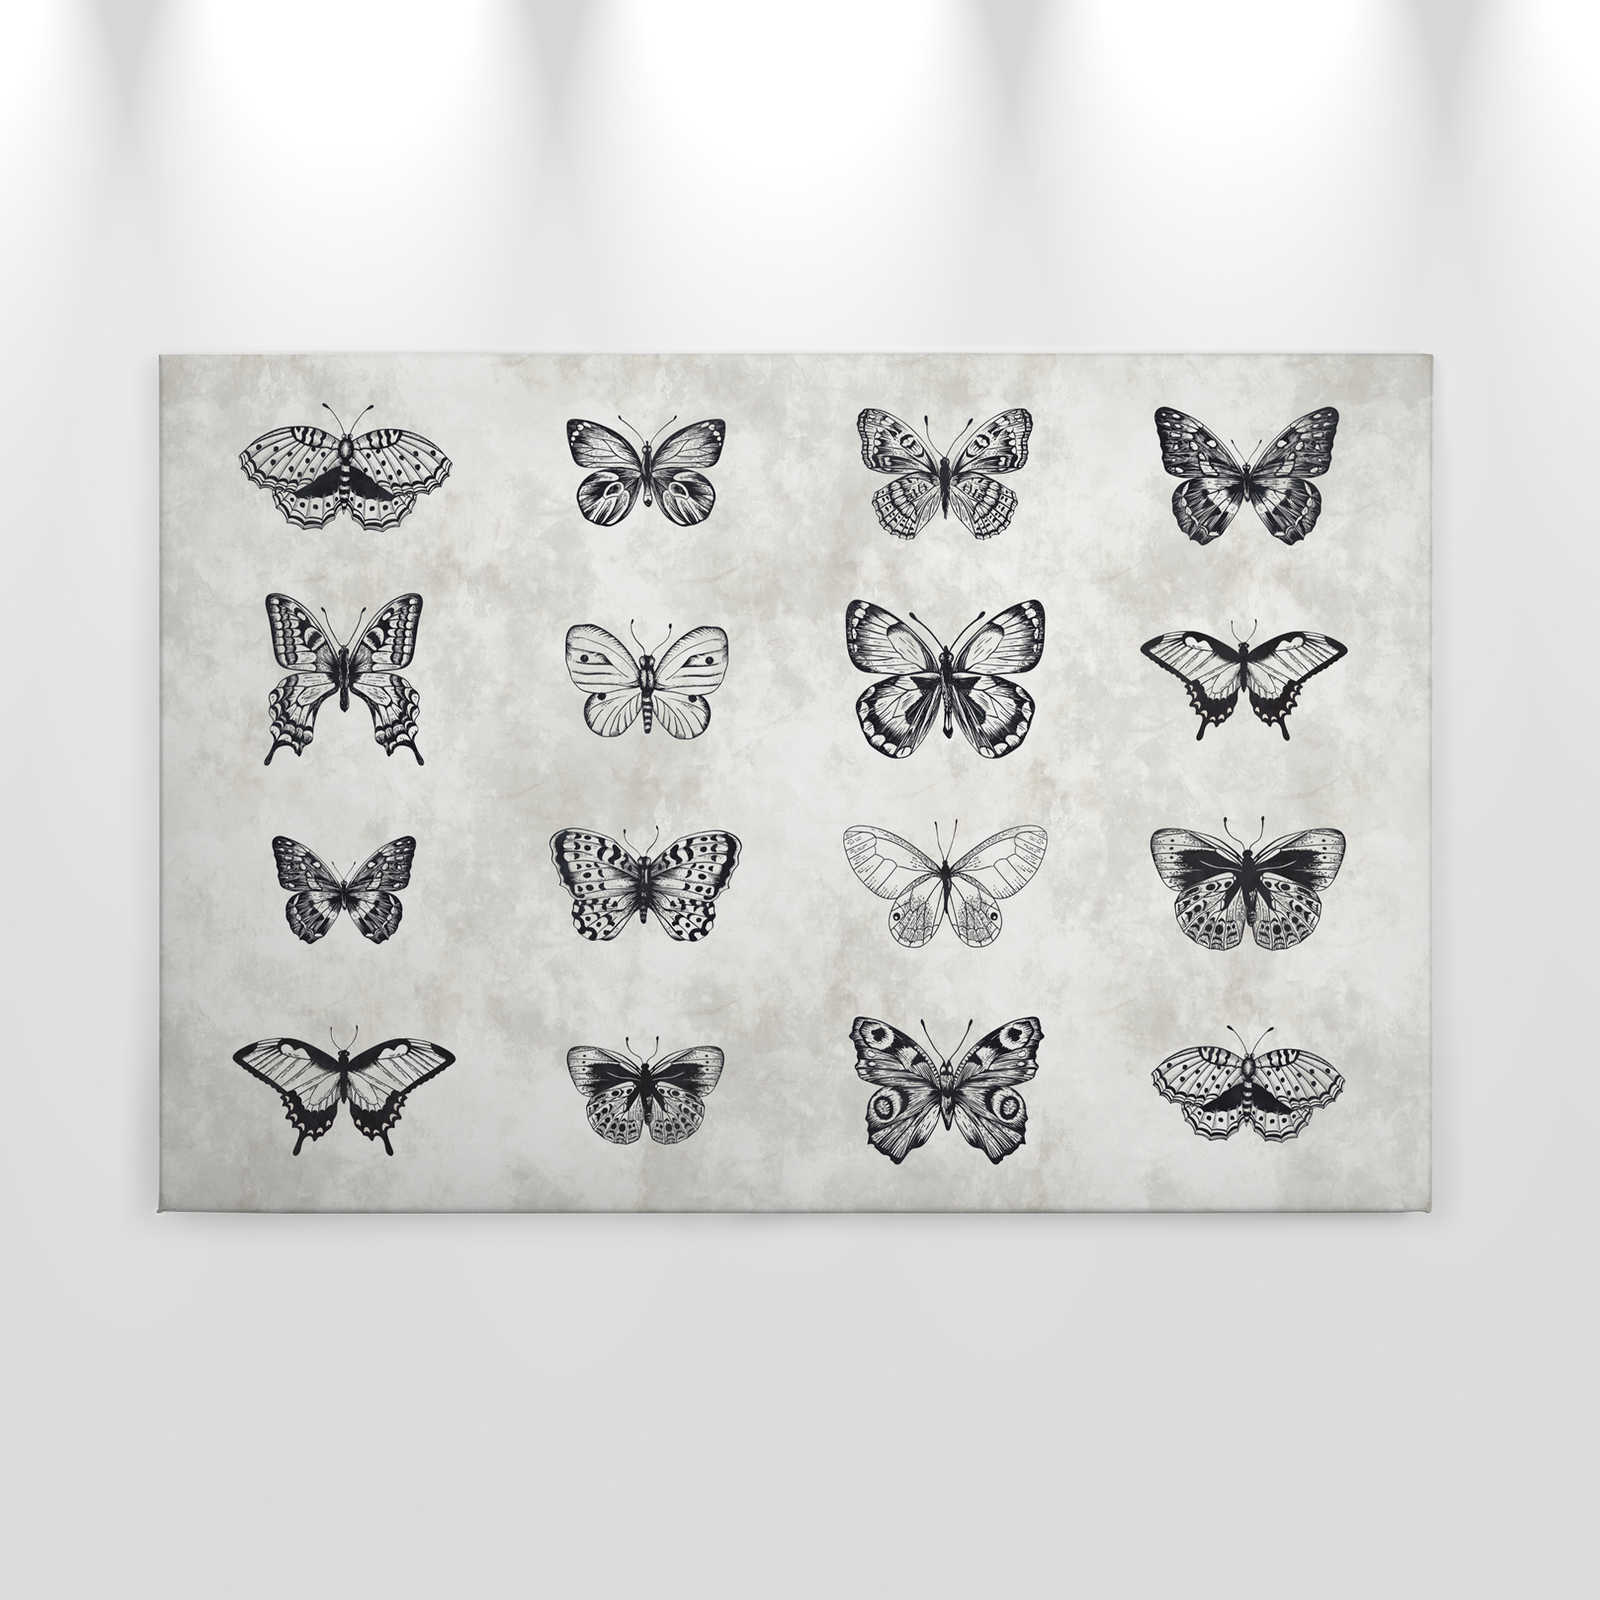             Papillon toile noir et blanc dessins - 0,90 m x 0,60 m
        